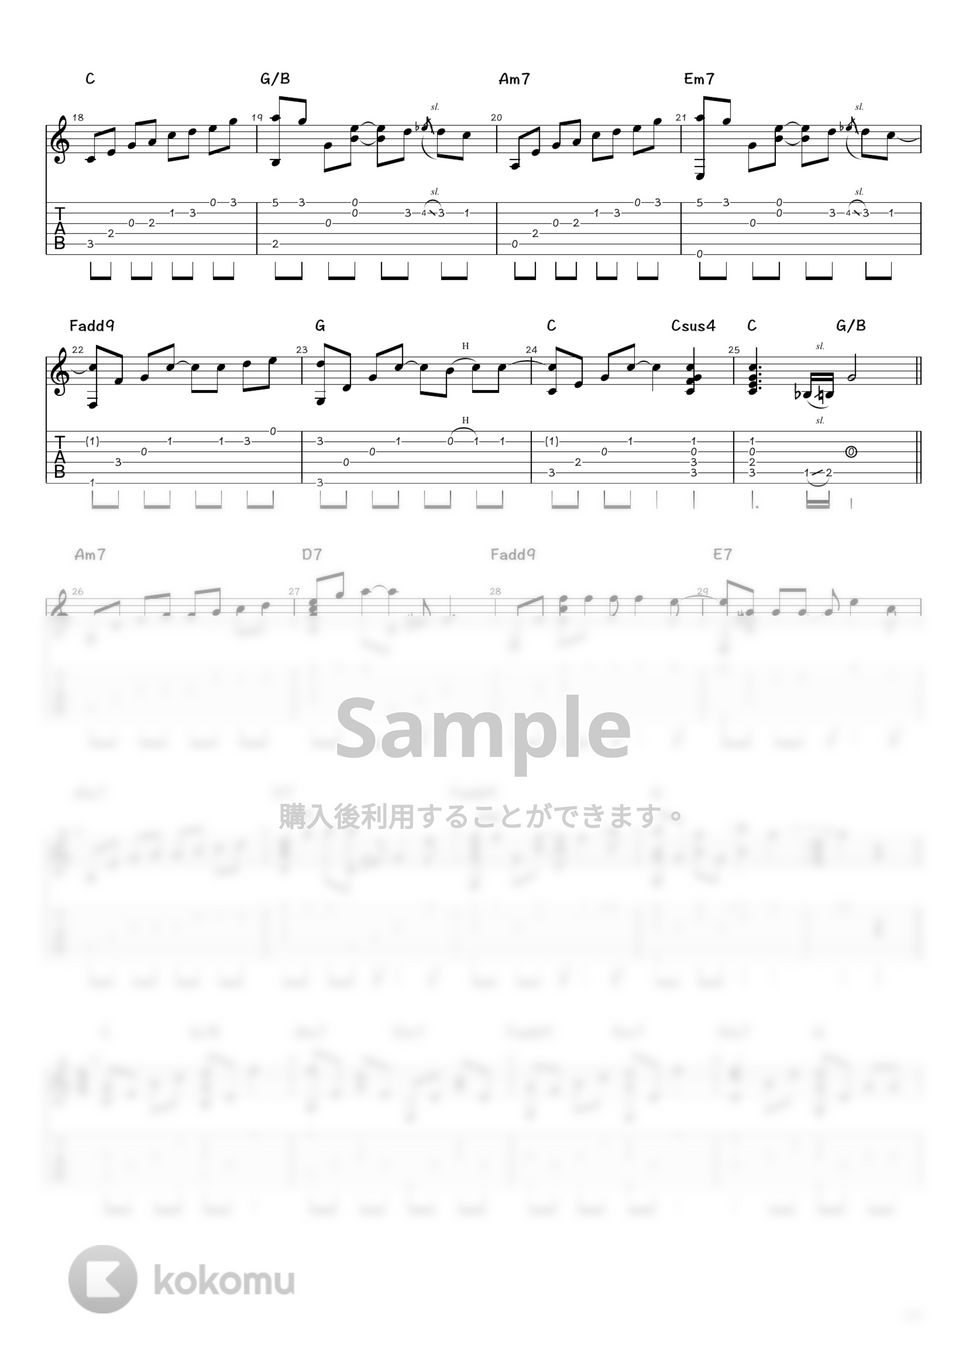 森山直太朗 - 夏の終わり (ソロギター / タブ譜) by 井上さとみ